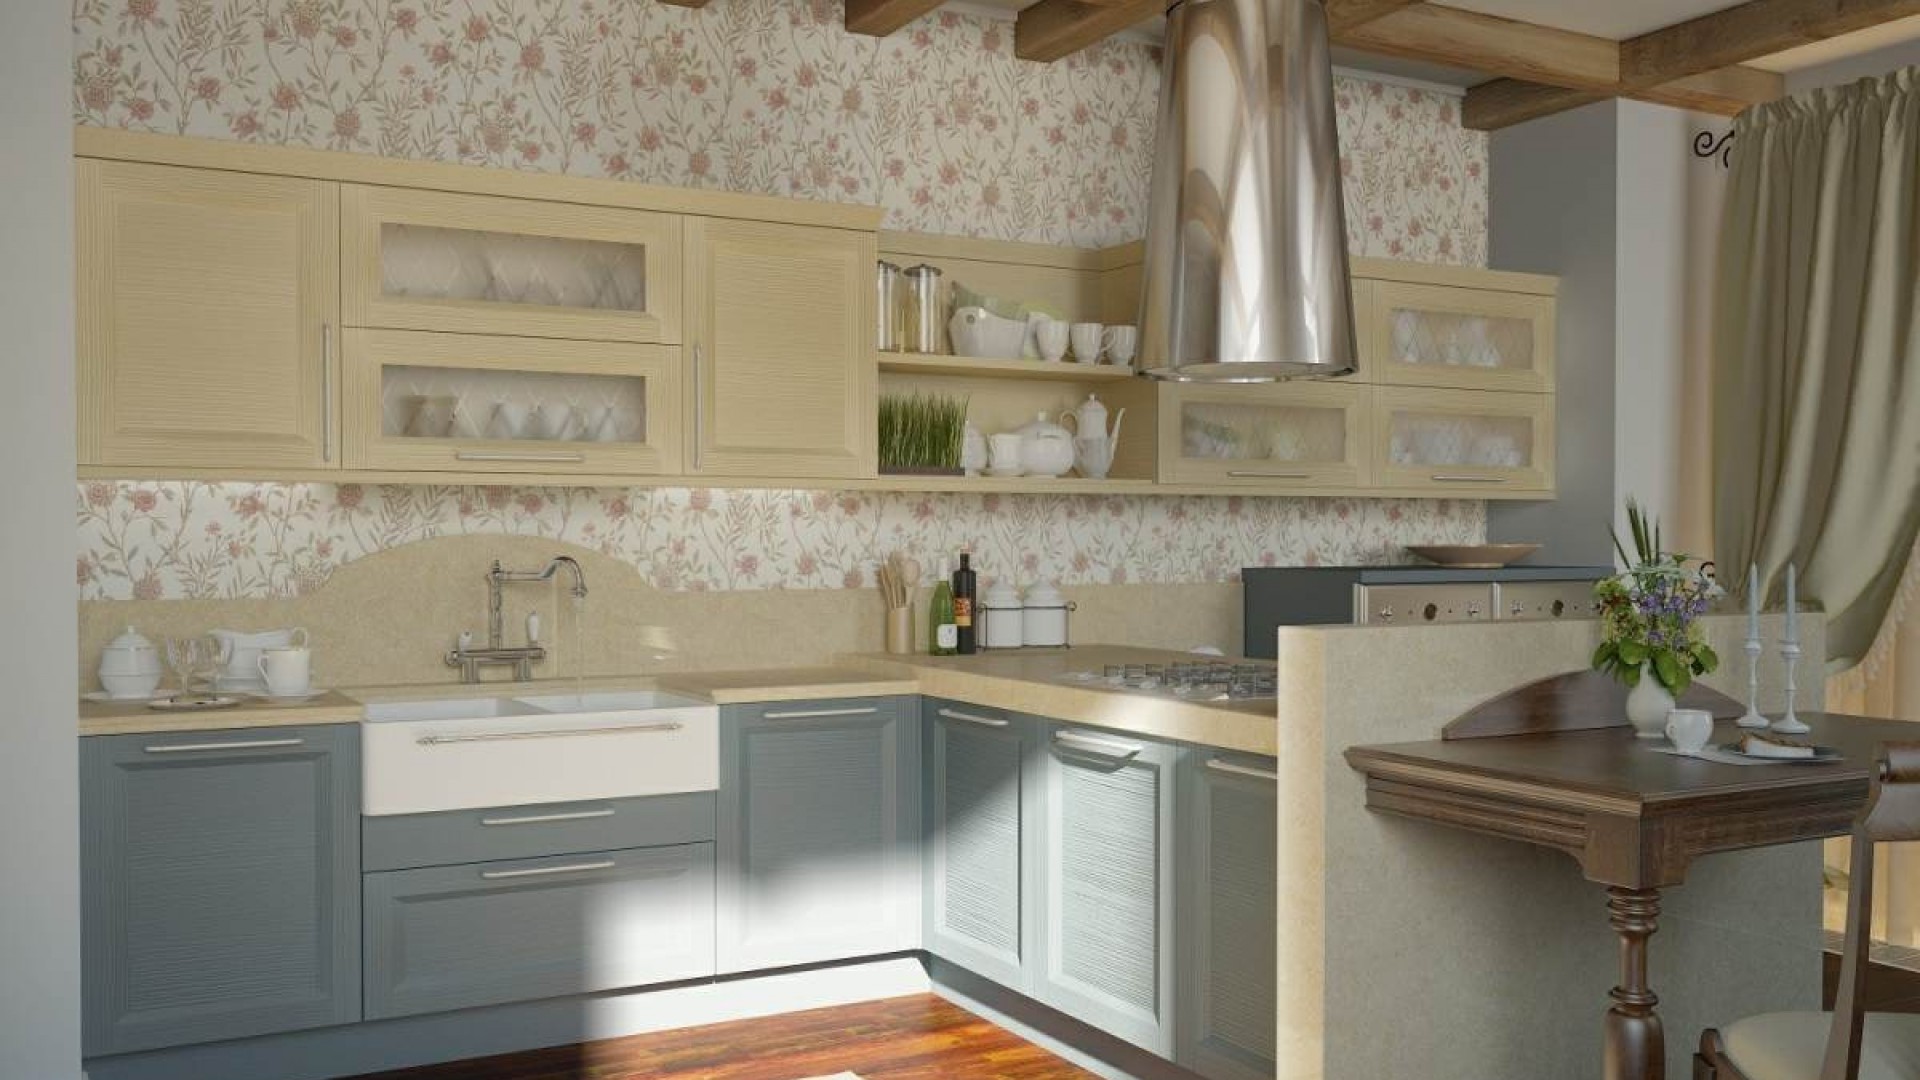 Modern Wood Style Kitchen Interior